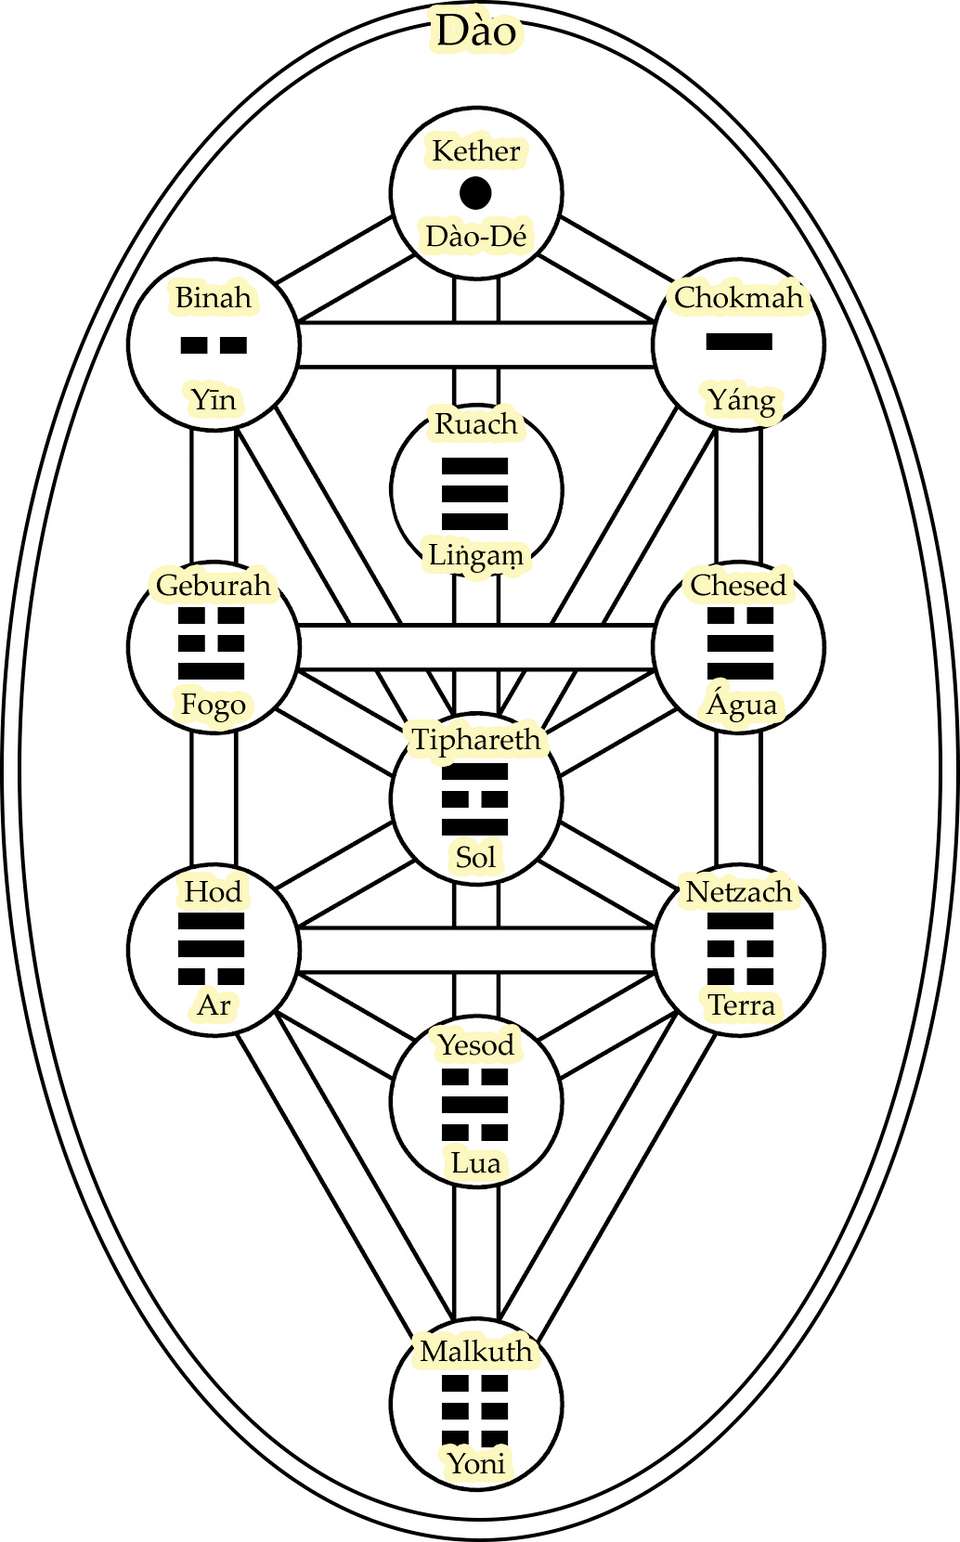 Árvore da Vida com os Trigramas, o Yin, o Yang e o Dao-De.